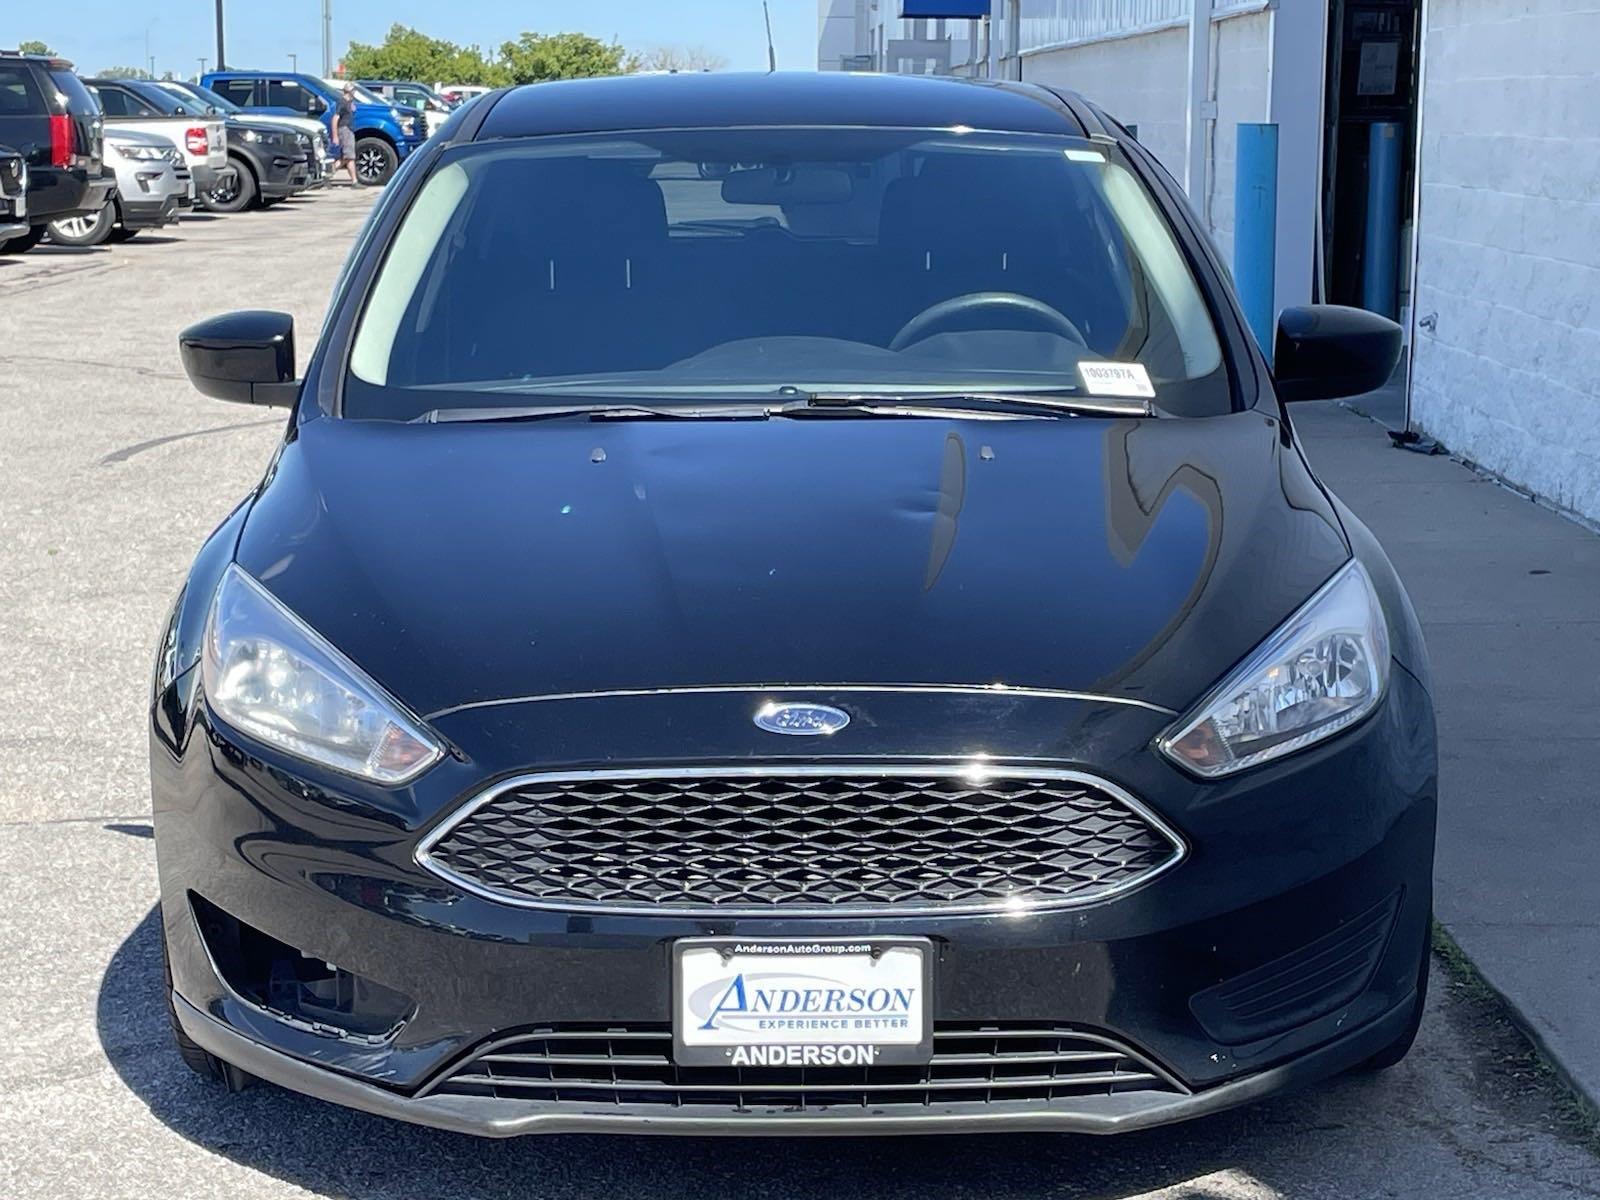 Used 2018 Ford Focus SE Hatchback for sale in Lincoln NE